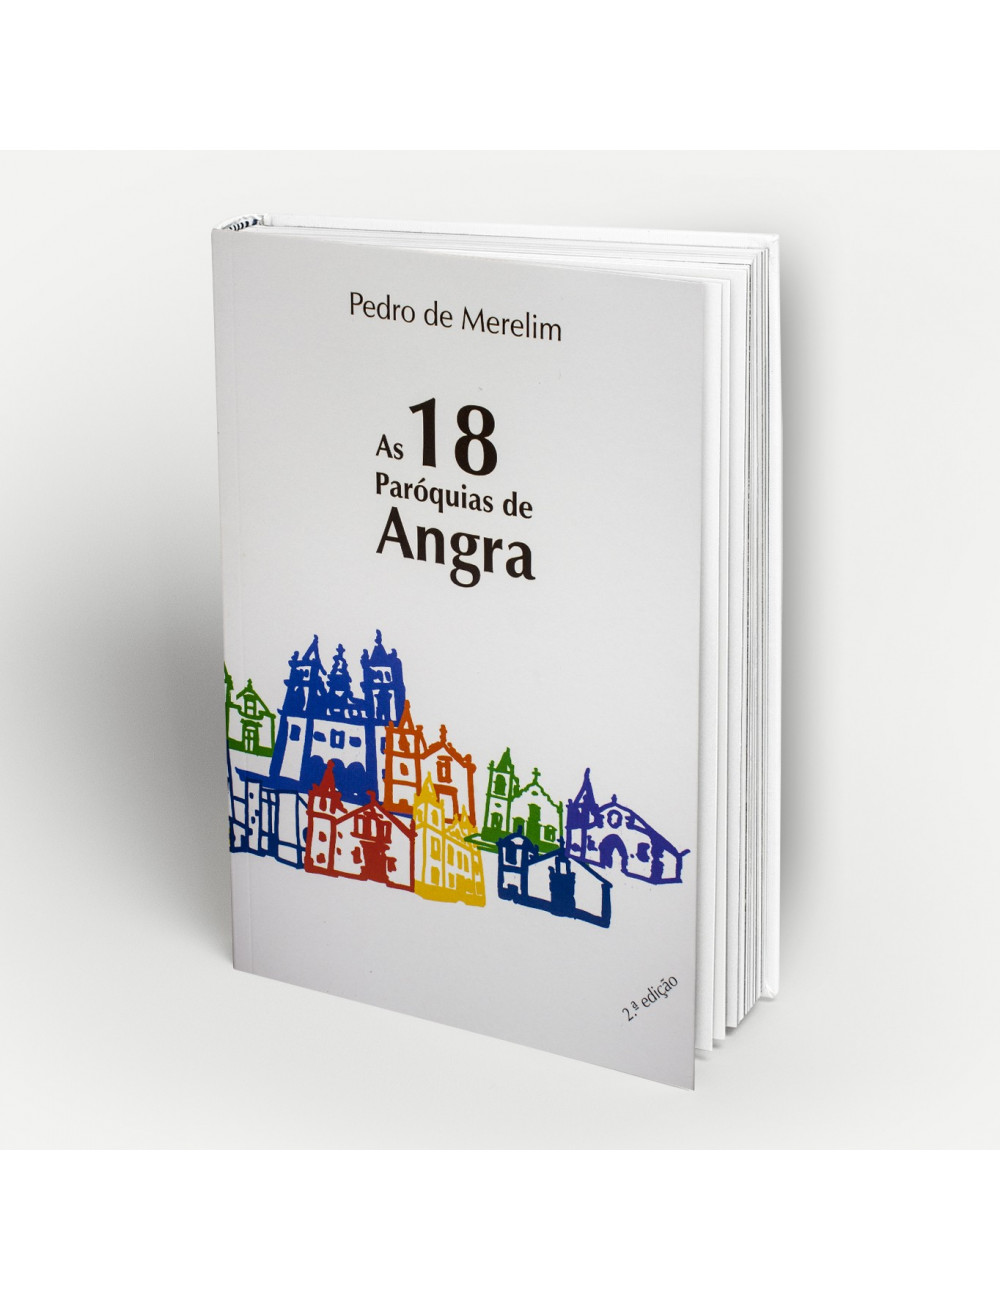 "As 18 Paróquias de Angra"